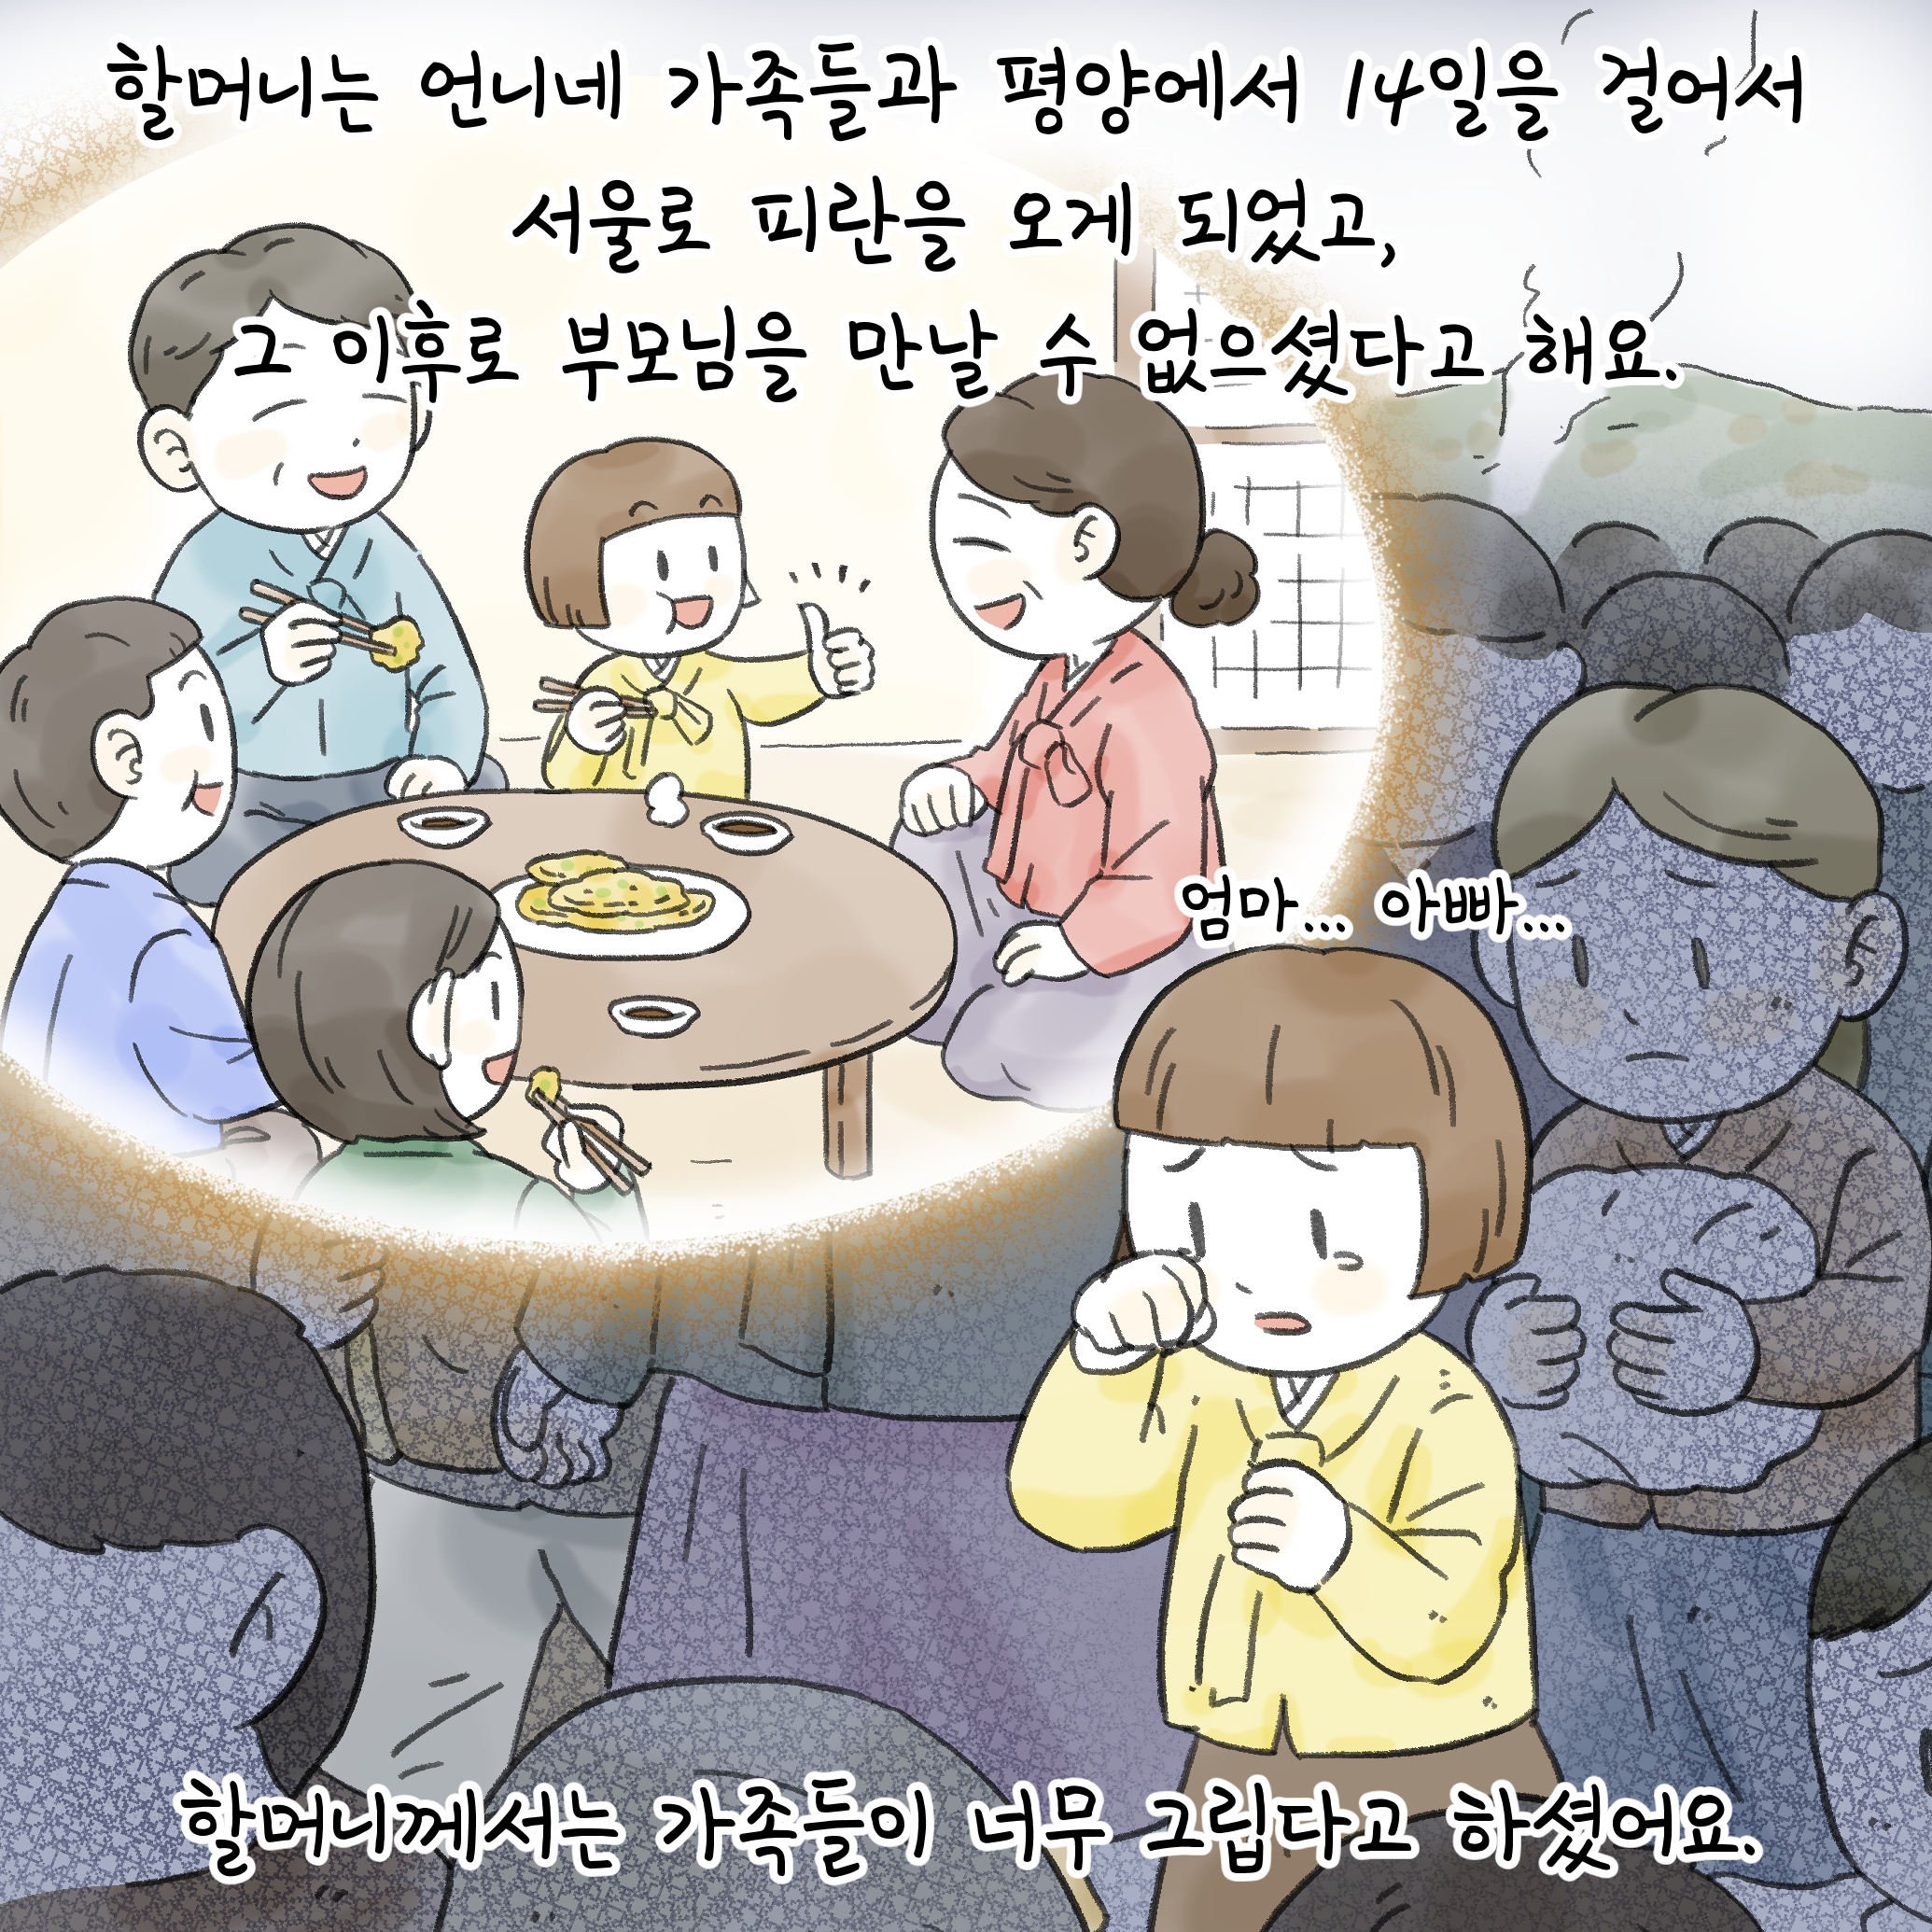 할머니는 언니네 가족들과 평양에서 14일을 걸어서 서울로 피란을 오게 되었고, 그 이후로 부모님을 만날 수 없으셨다고 해요.
엄마..아빠..
할머니께서는 가족들이 너무 그립다고 하셨어요.